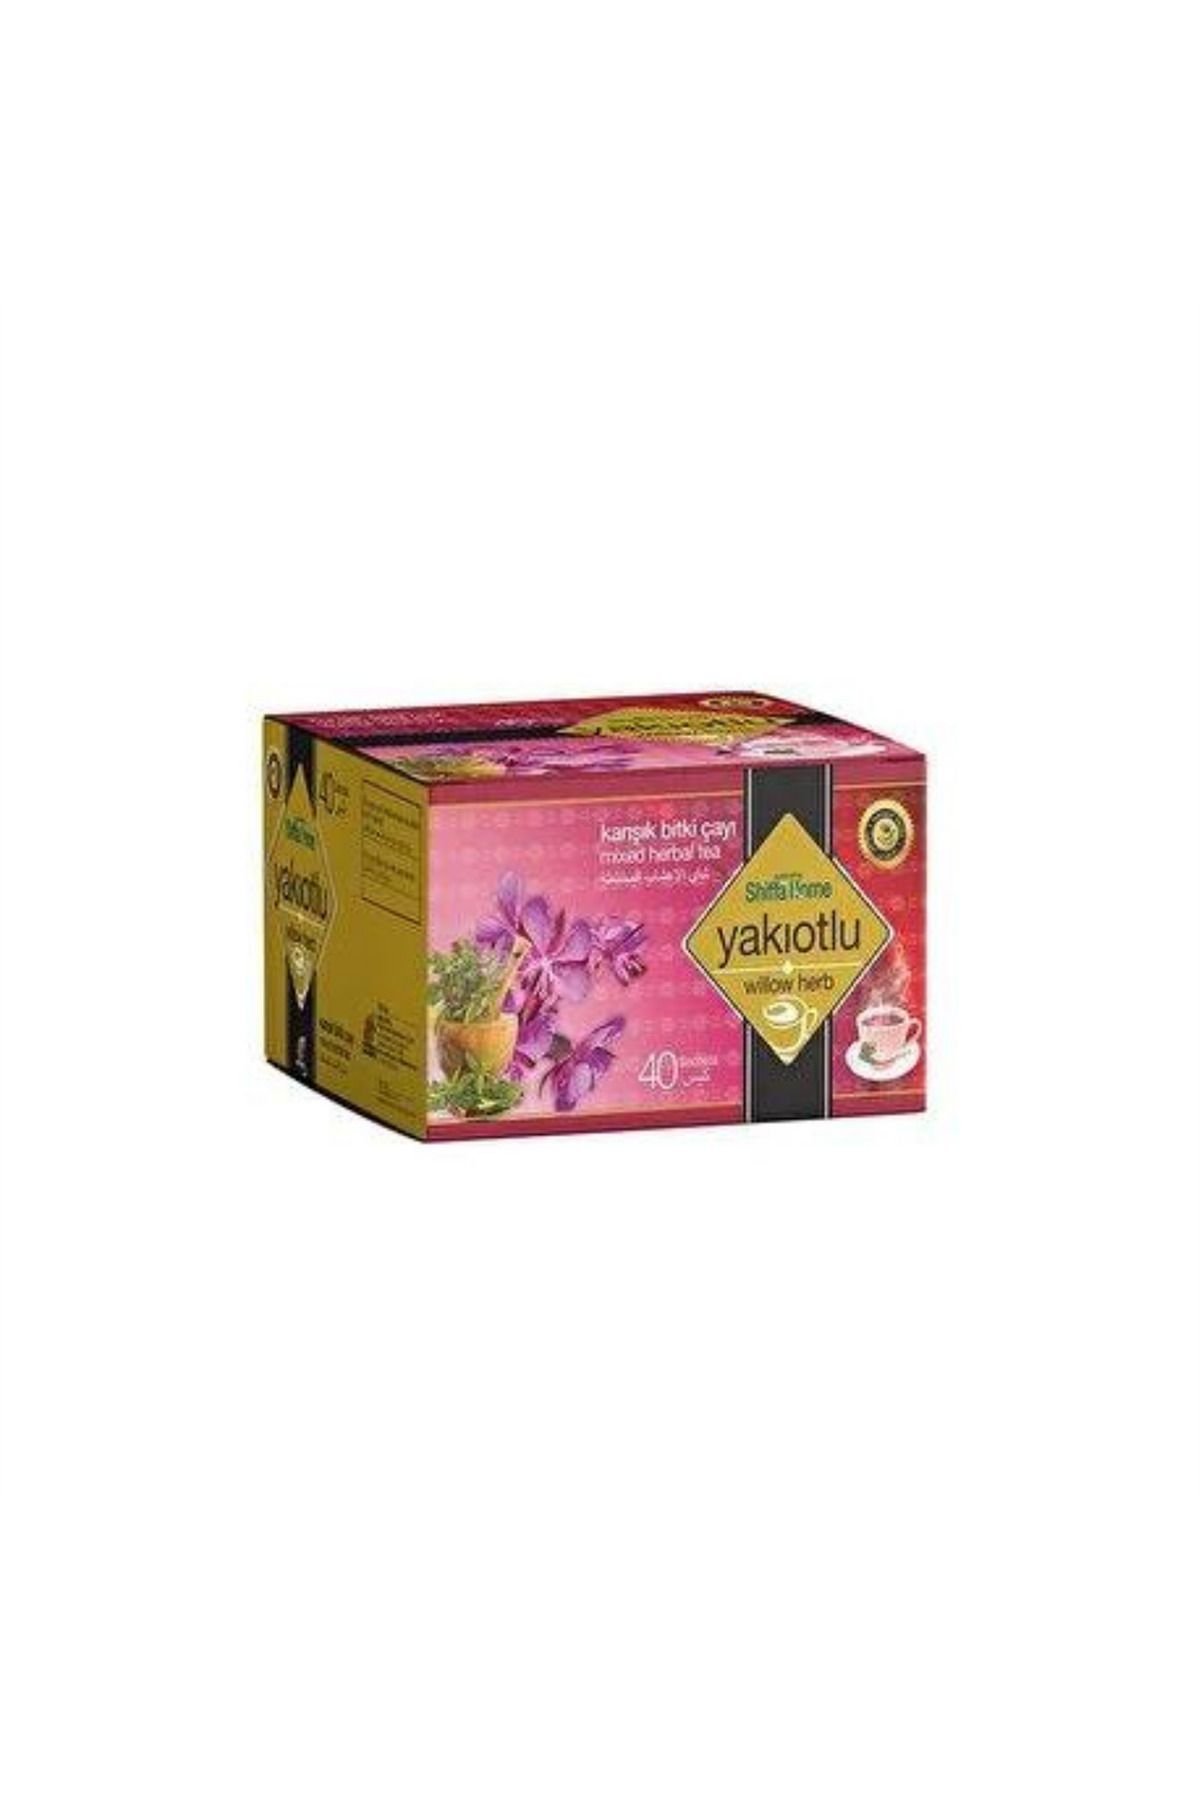 Shiffa Home Karışık Bitki Çayı Yakıotlu 40 Lı